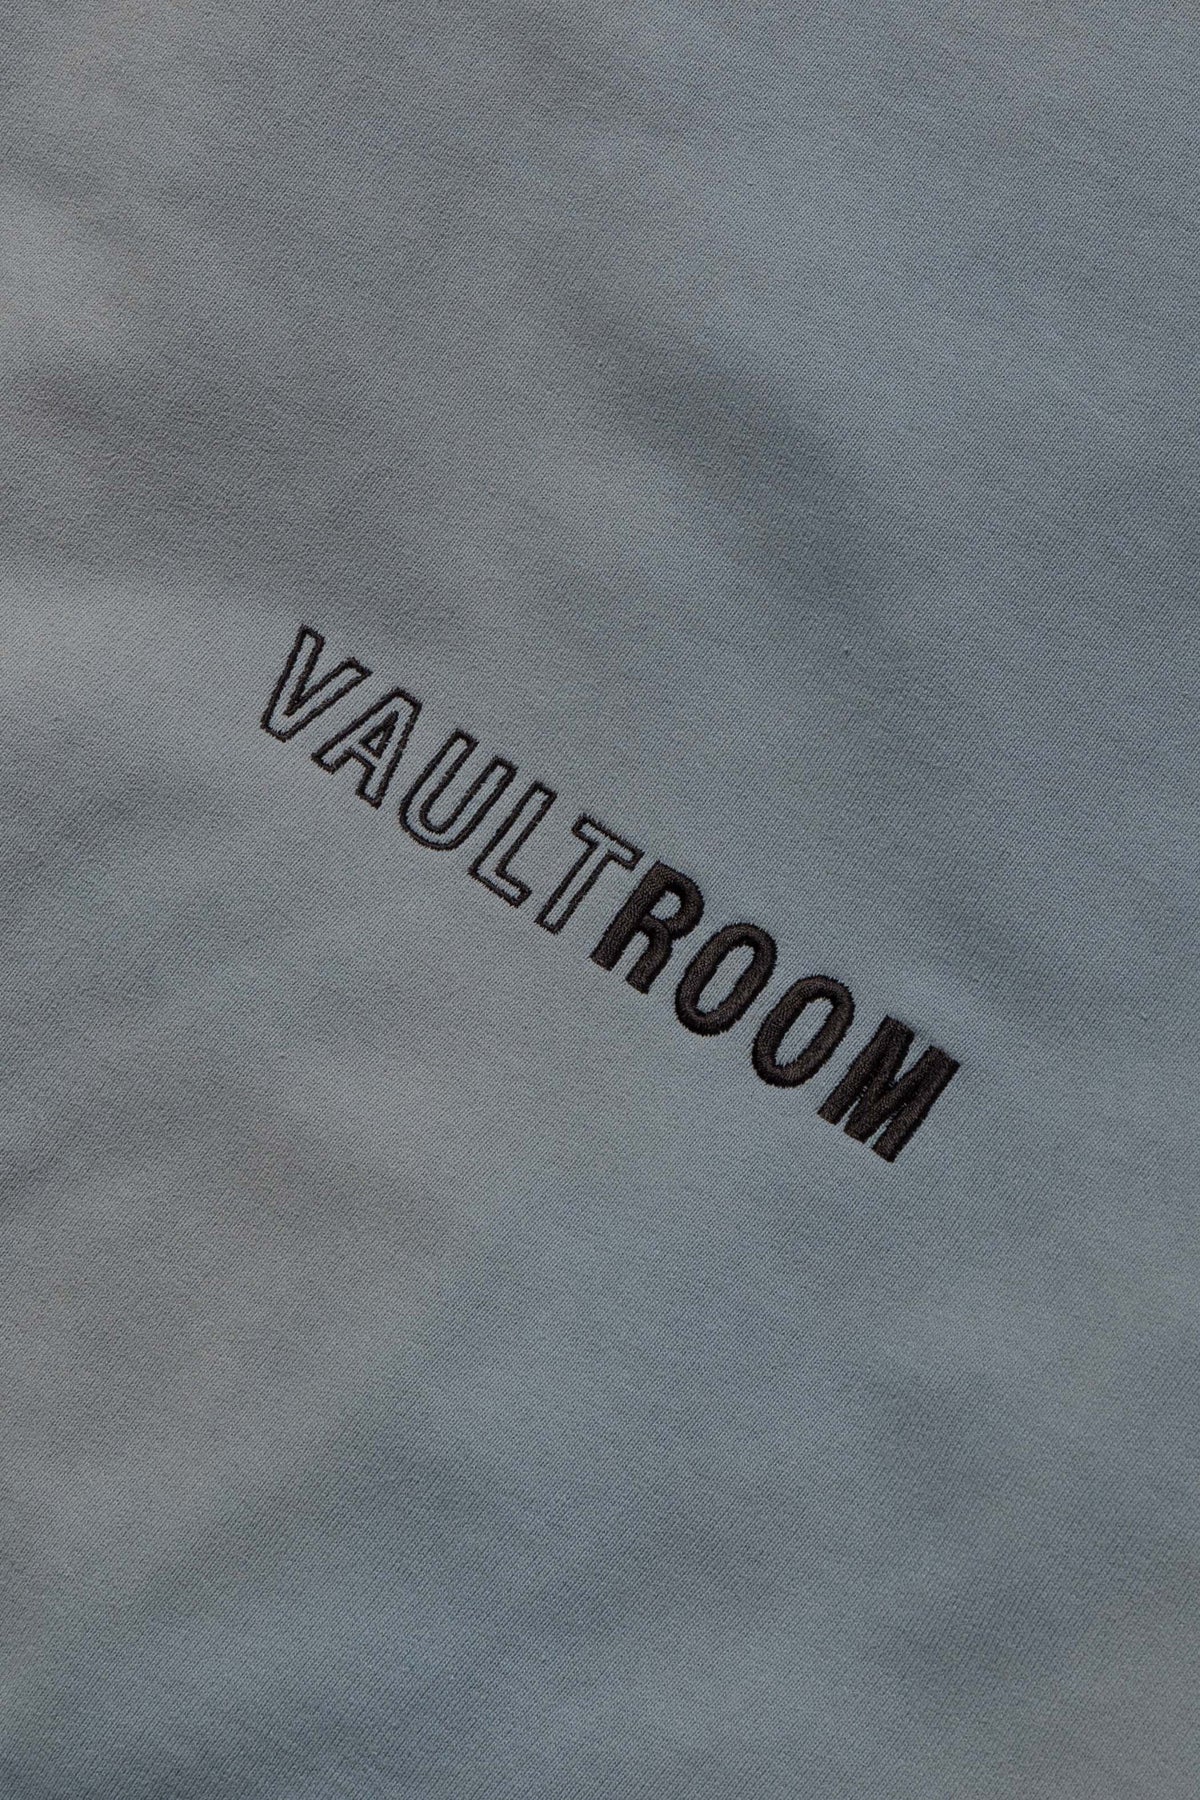 vaultroom "VGC" Hoodie / DUSTY BLUE